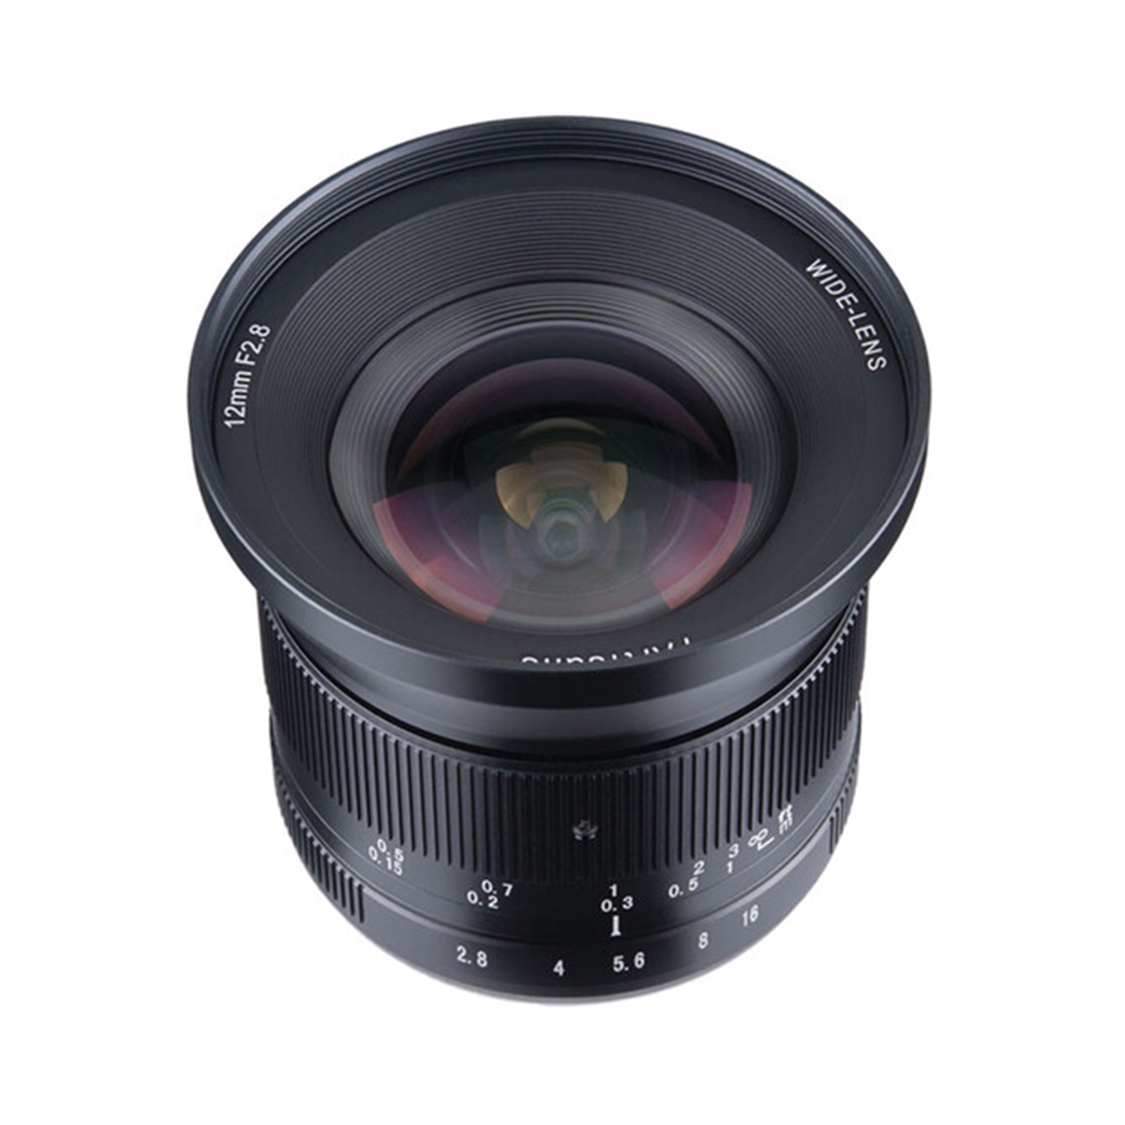 7Artisans Photoelectric 12mm f2.8 II Lens for Sony E Mount